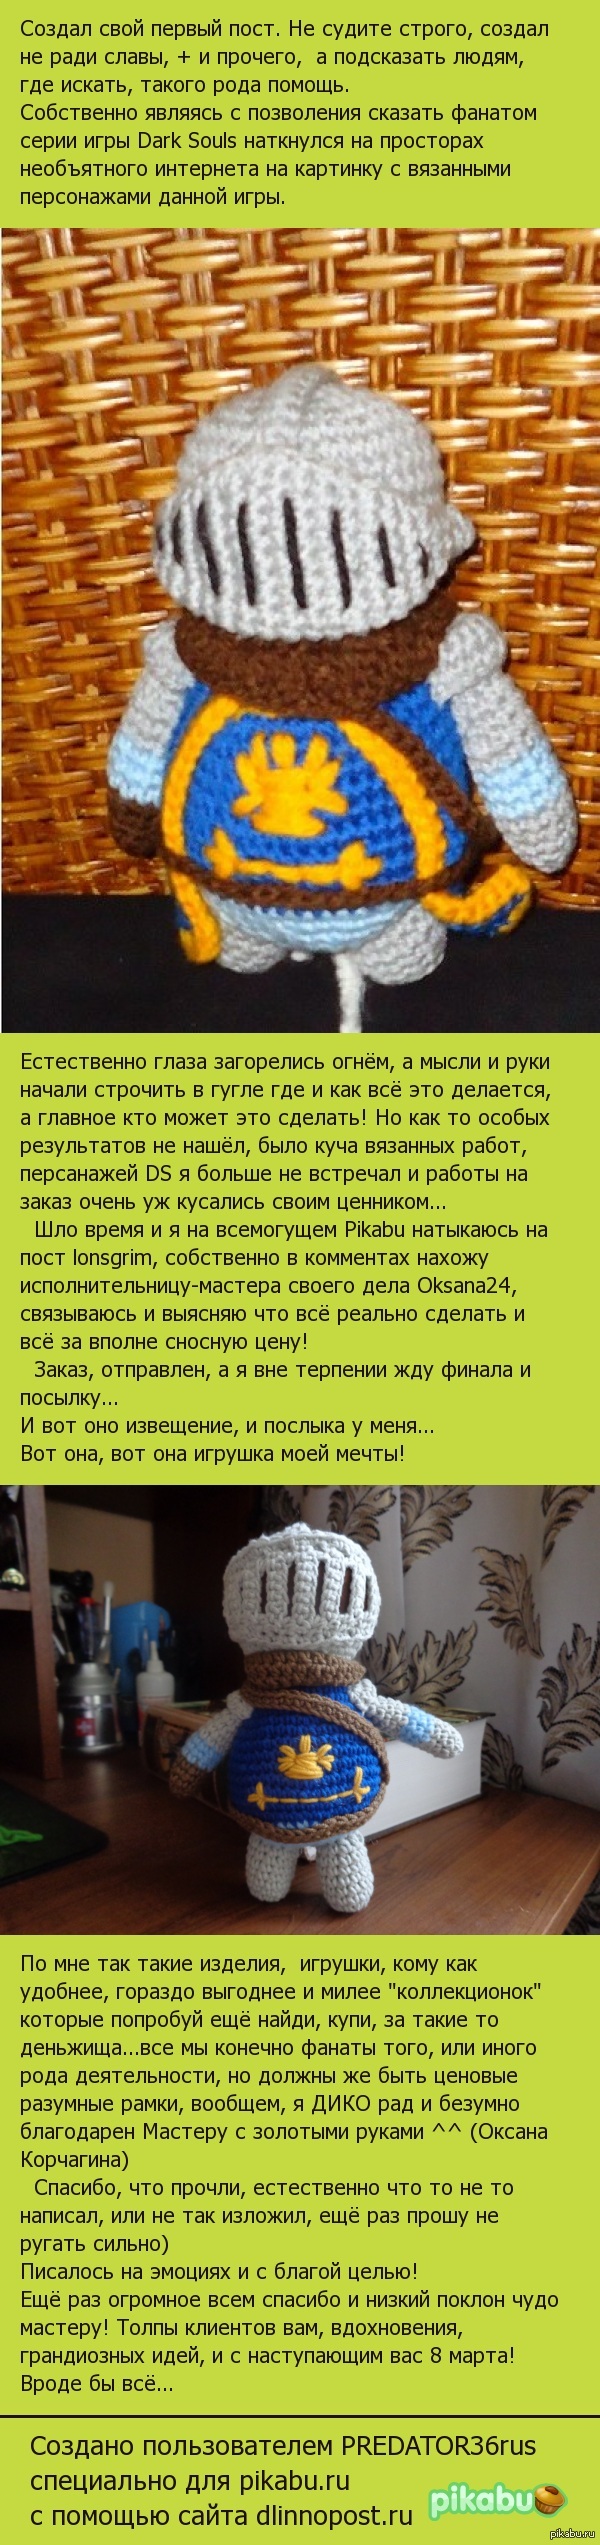 Как Pikabu мечты воплощает... Создано после просмотра данной темы <a href="http://pikabu.ru/story/ne_plyusov_radi_mblack_metalist_m_2970627">http://pikabu.ru/story/_2970627</a>   Автору жирный плюс!